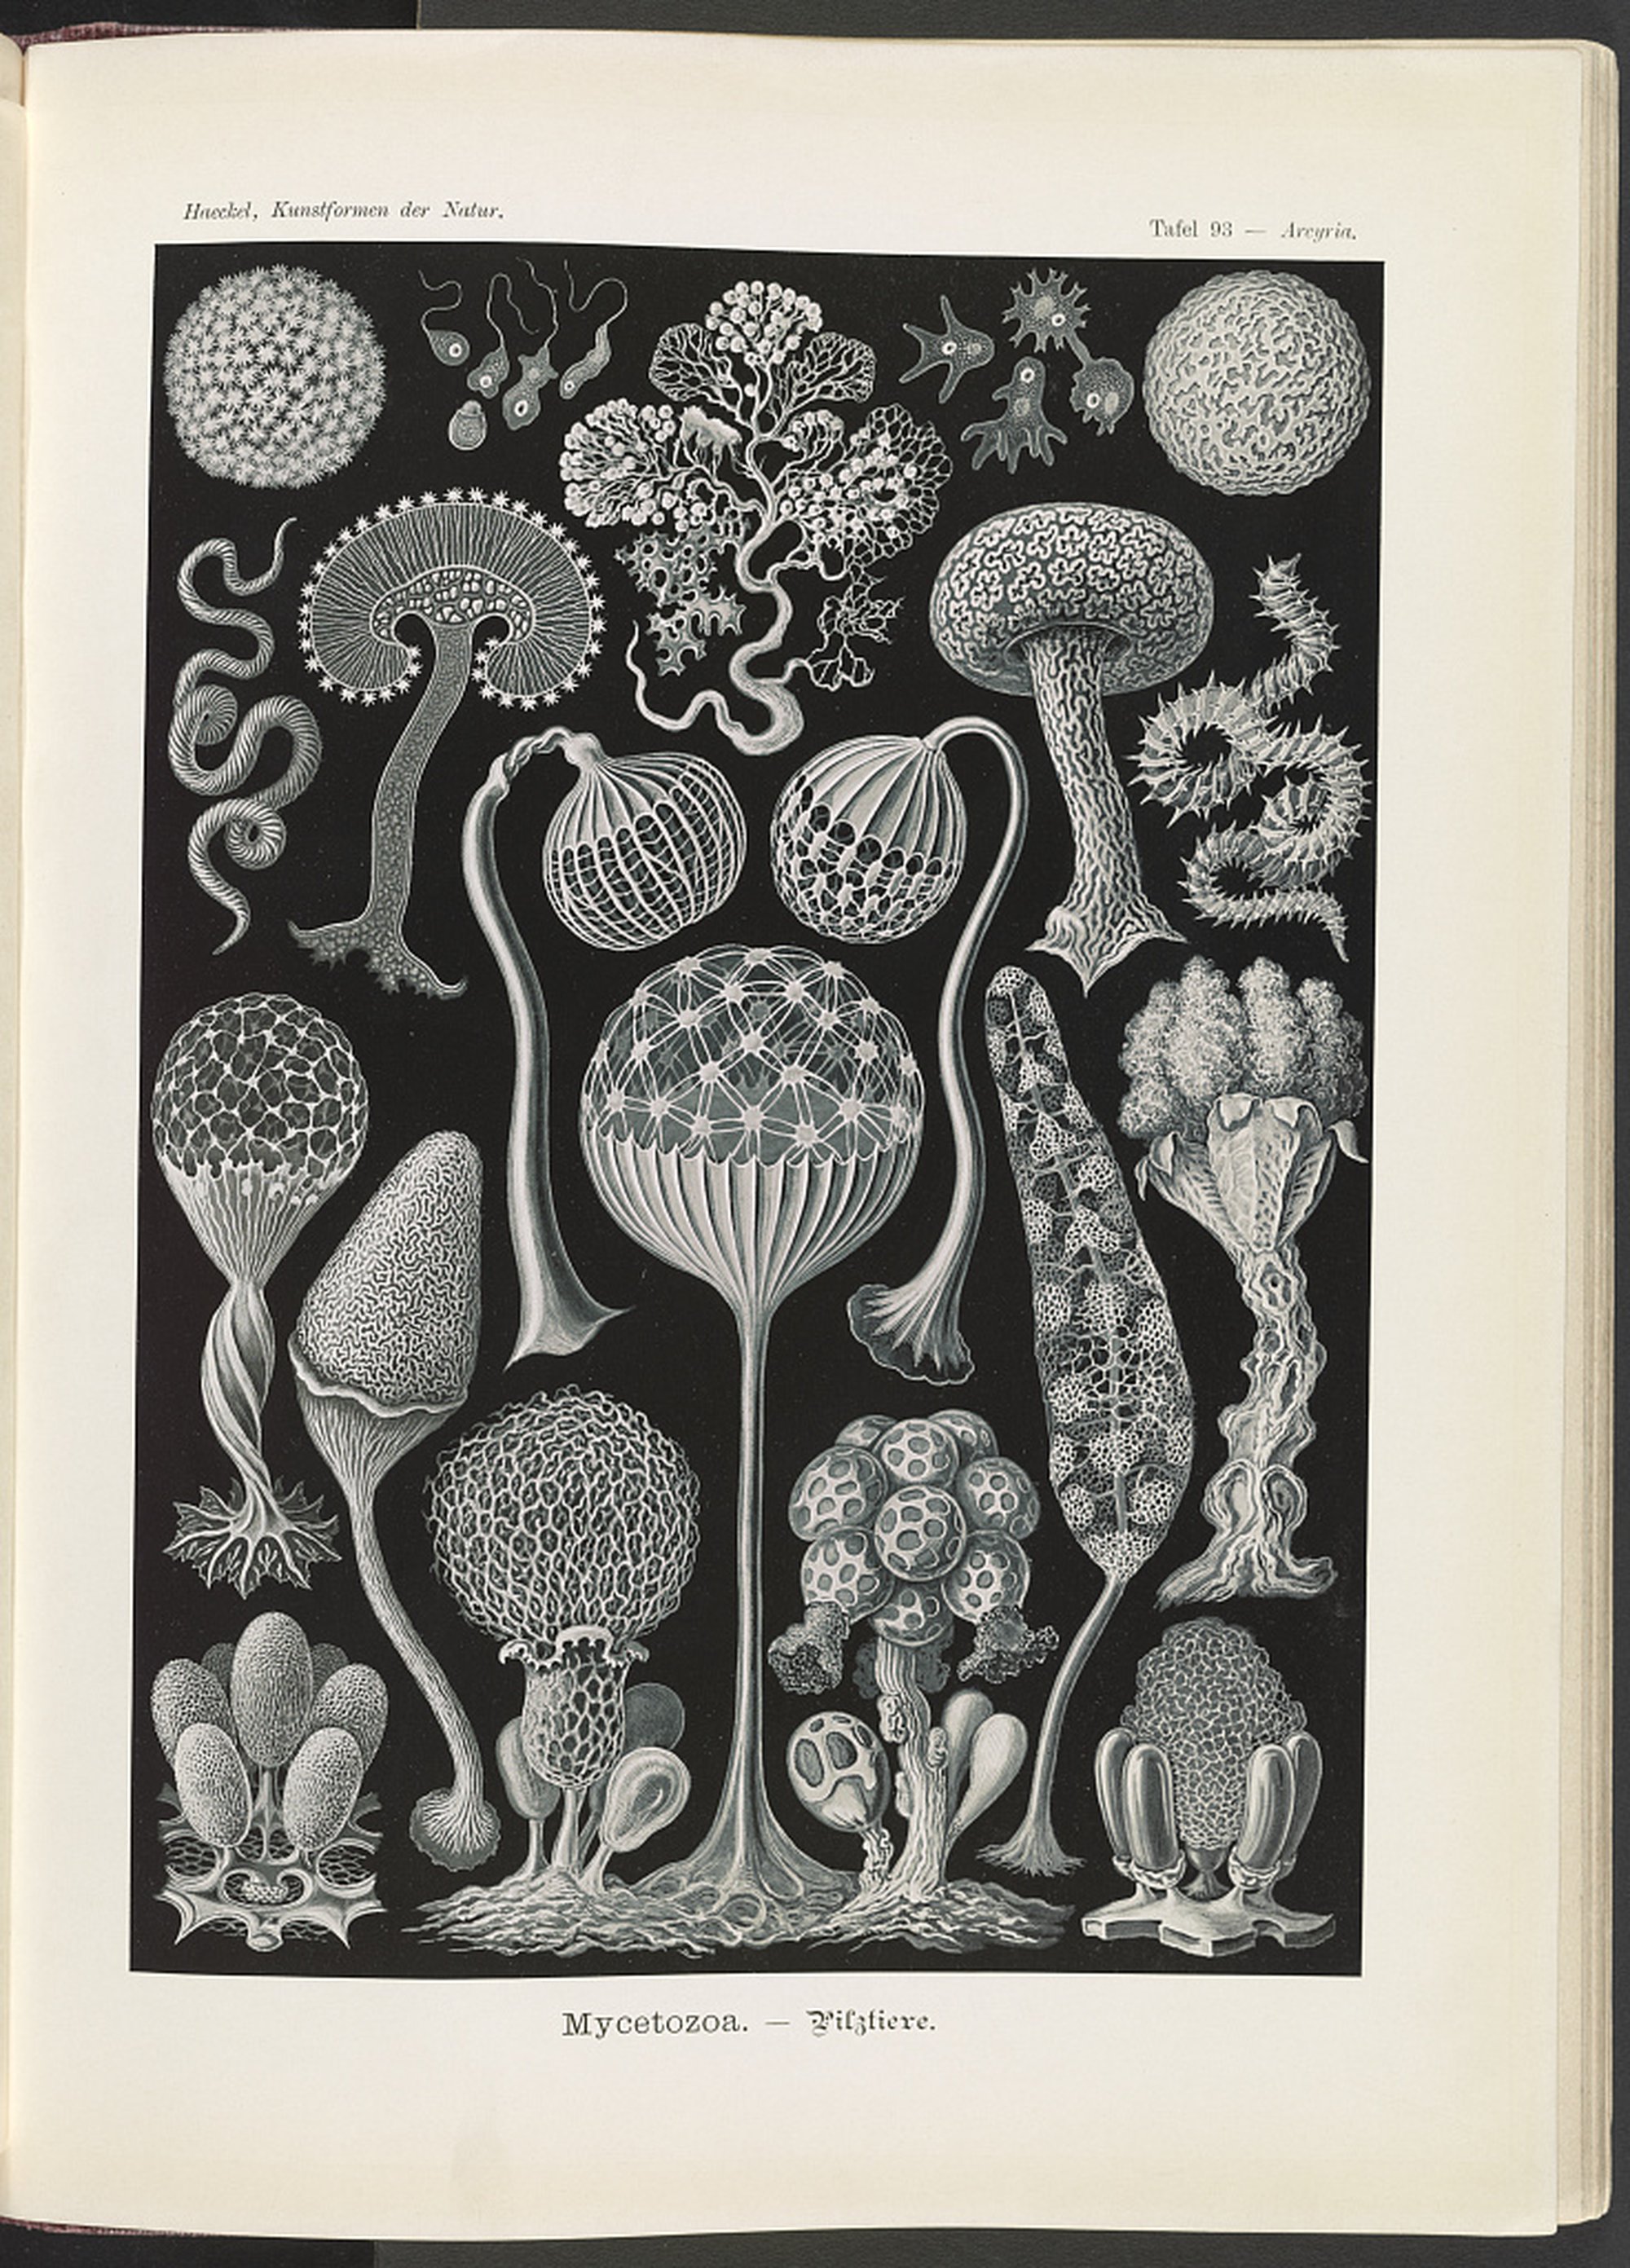 Ernst Haeckel, “Mycetozoa”, Kunstoformen der Natur, 1904